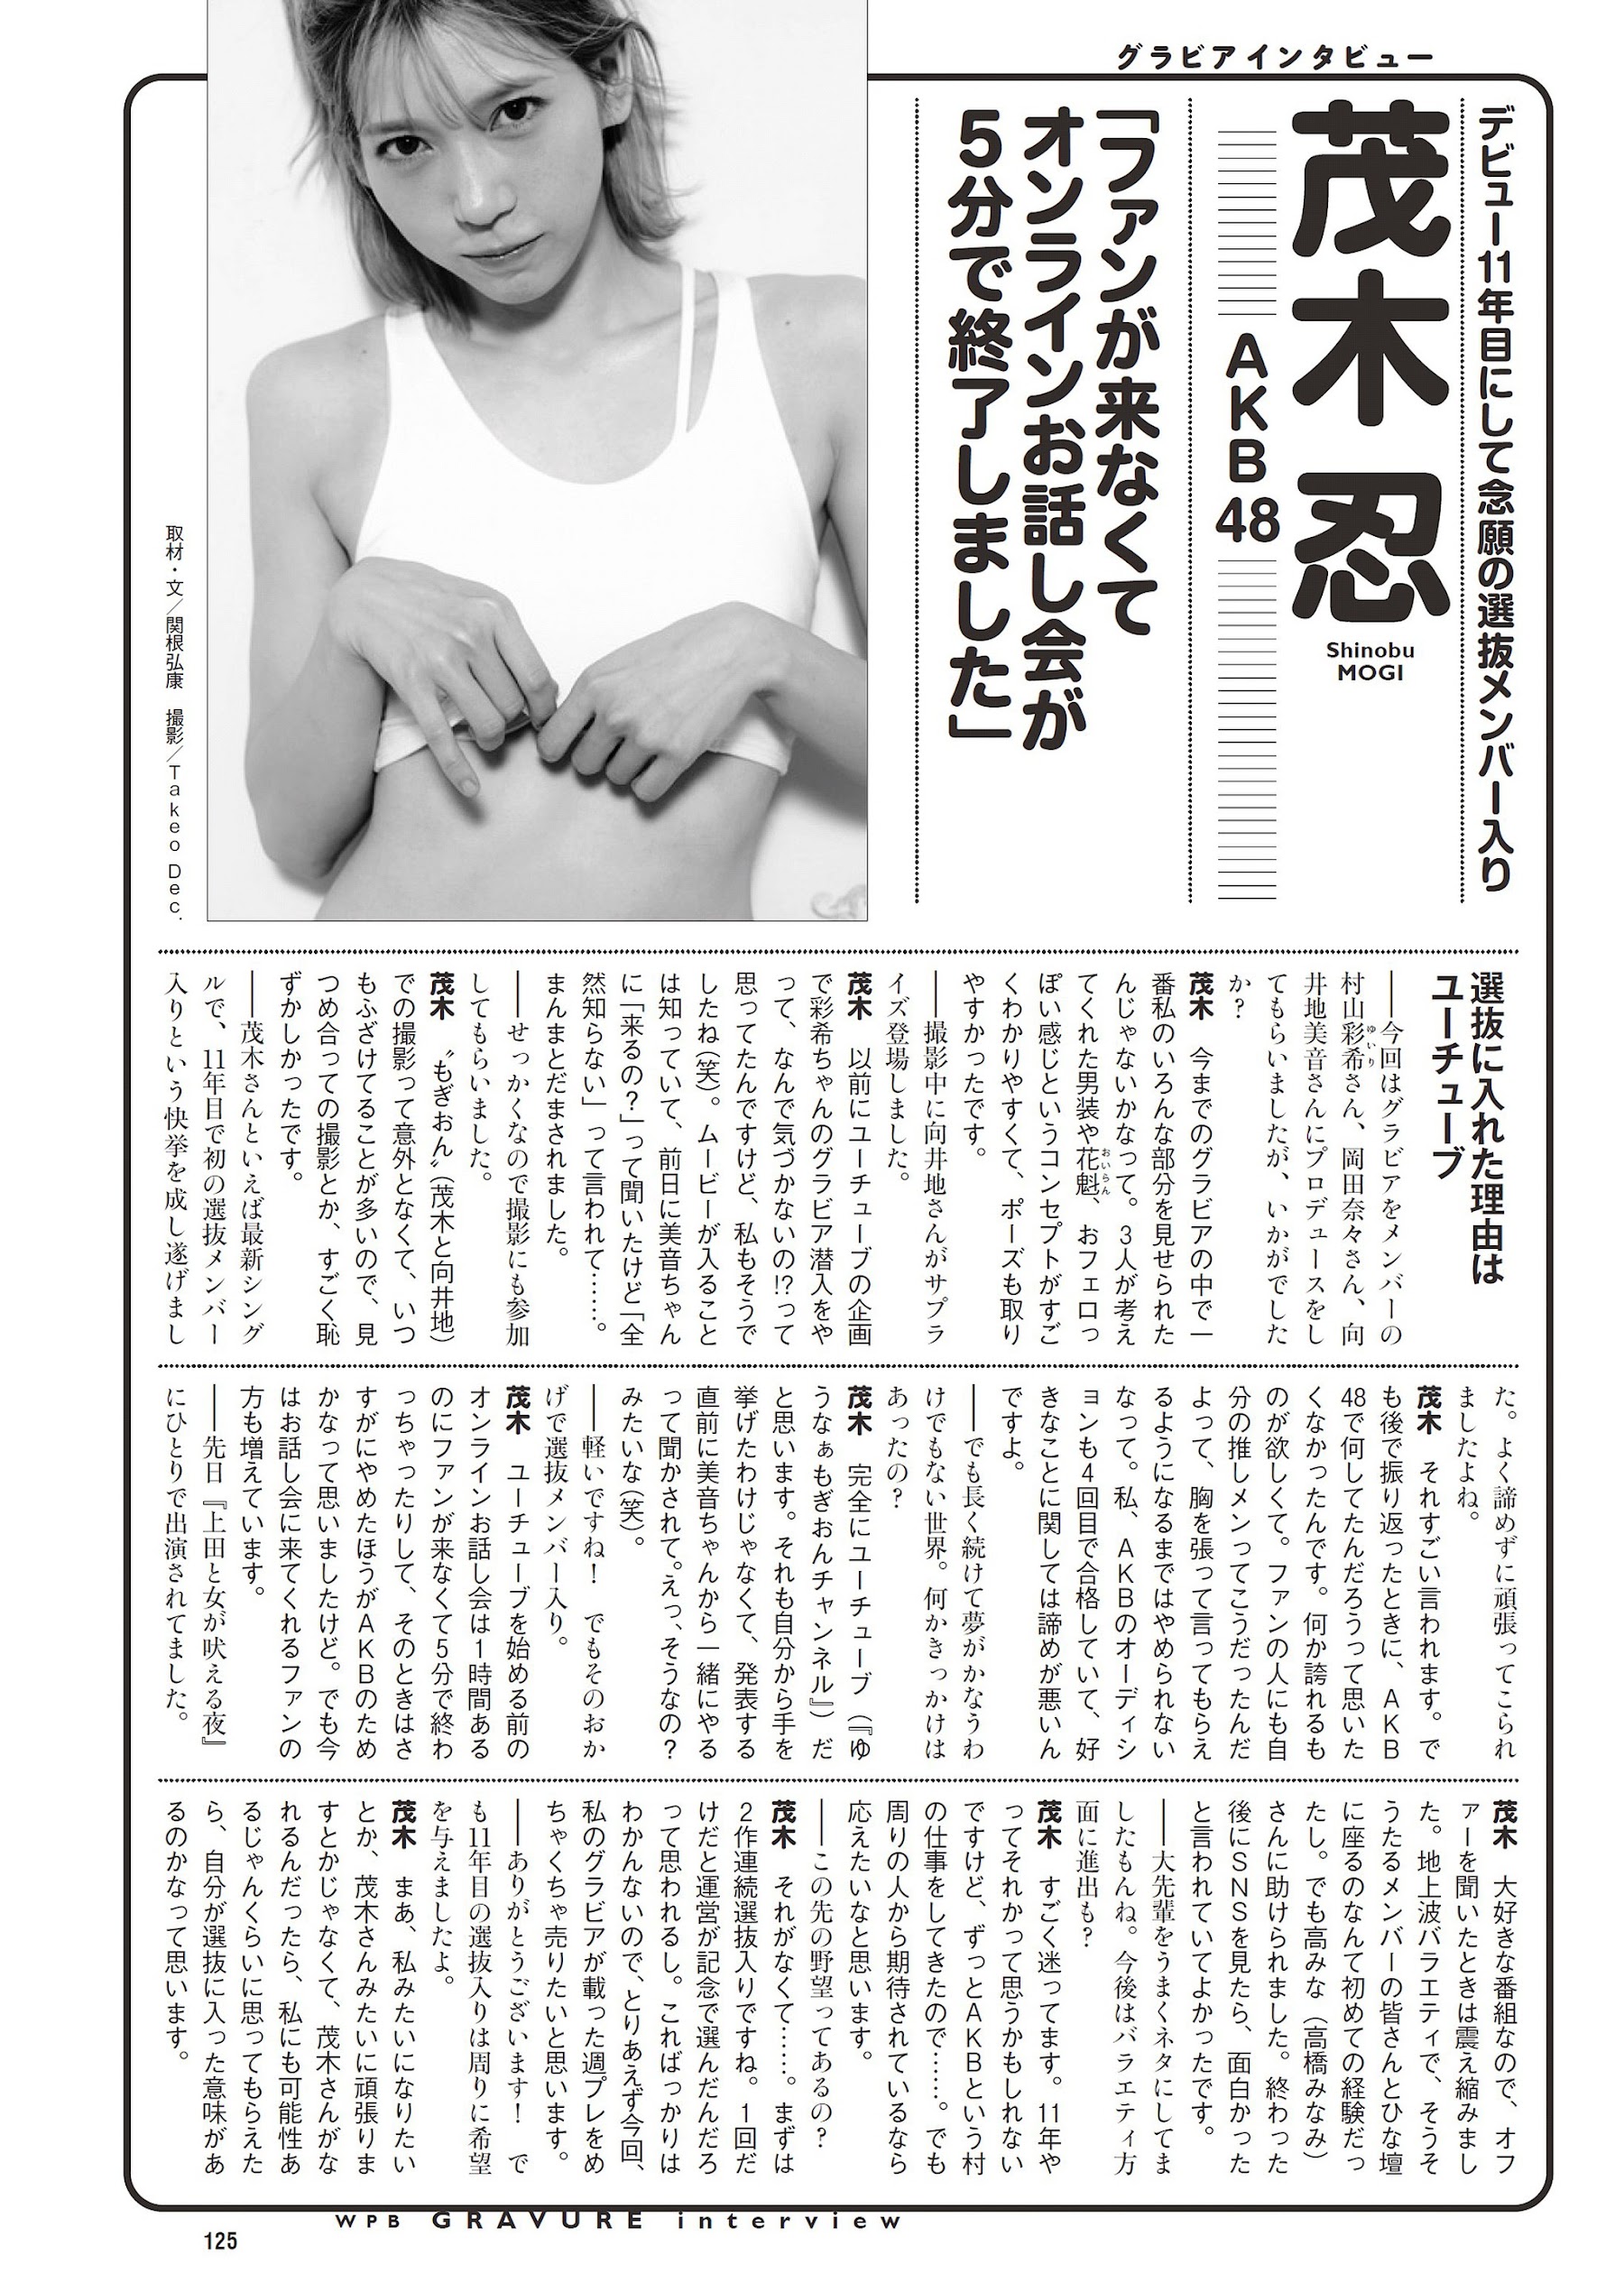 岸みゆ #ババババンビ 高田里穂-Weekly Playboy 2022.11.14 No.46 高清套图 第78张